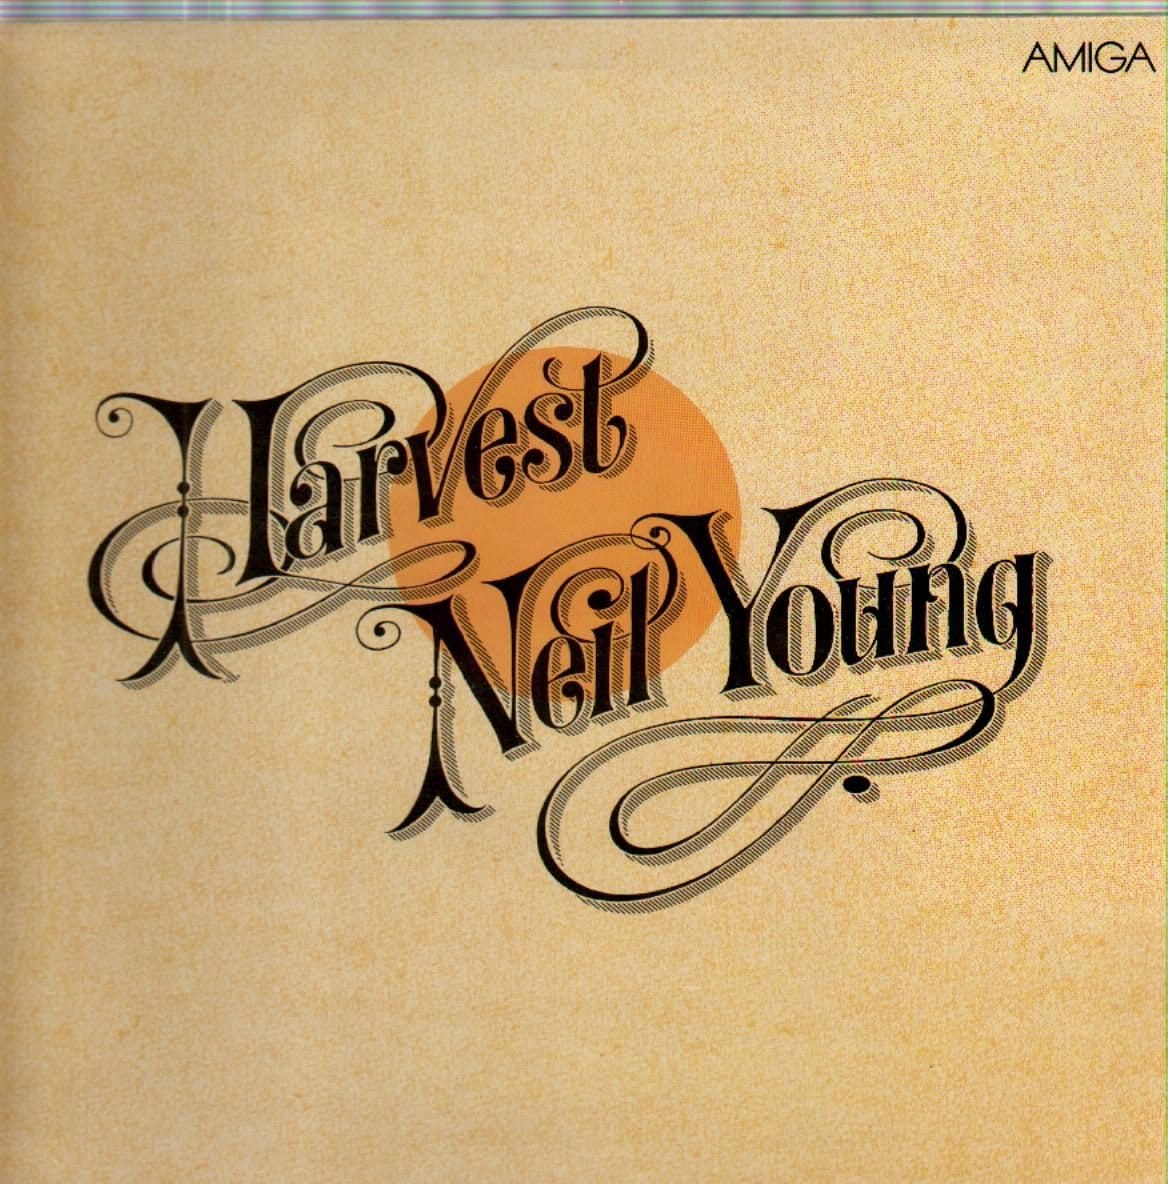 Neil Young "Harvest" (1989): Erst 17 Jahre nach seinem offiziellen Erscheinen stand Neil Youngs viertes und zugleich erfolgreichstes Album in den DDR-Plattenregalen. Allerdings ohne Klapp-Cover, sondern mit einfachen Plattenhülle.